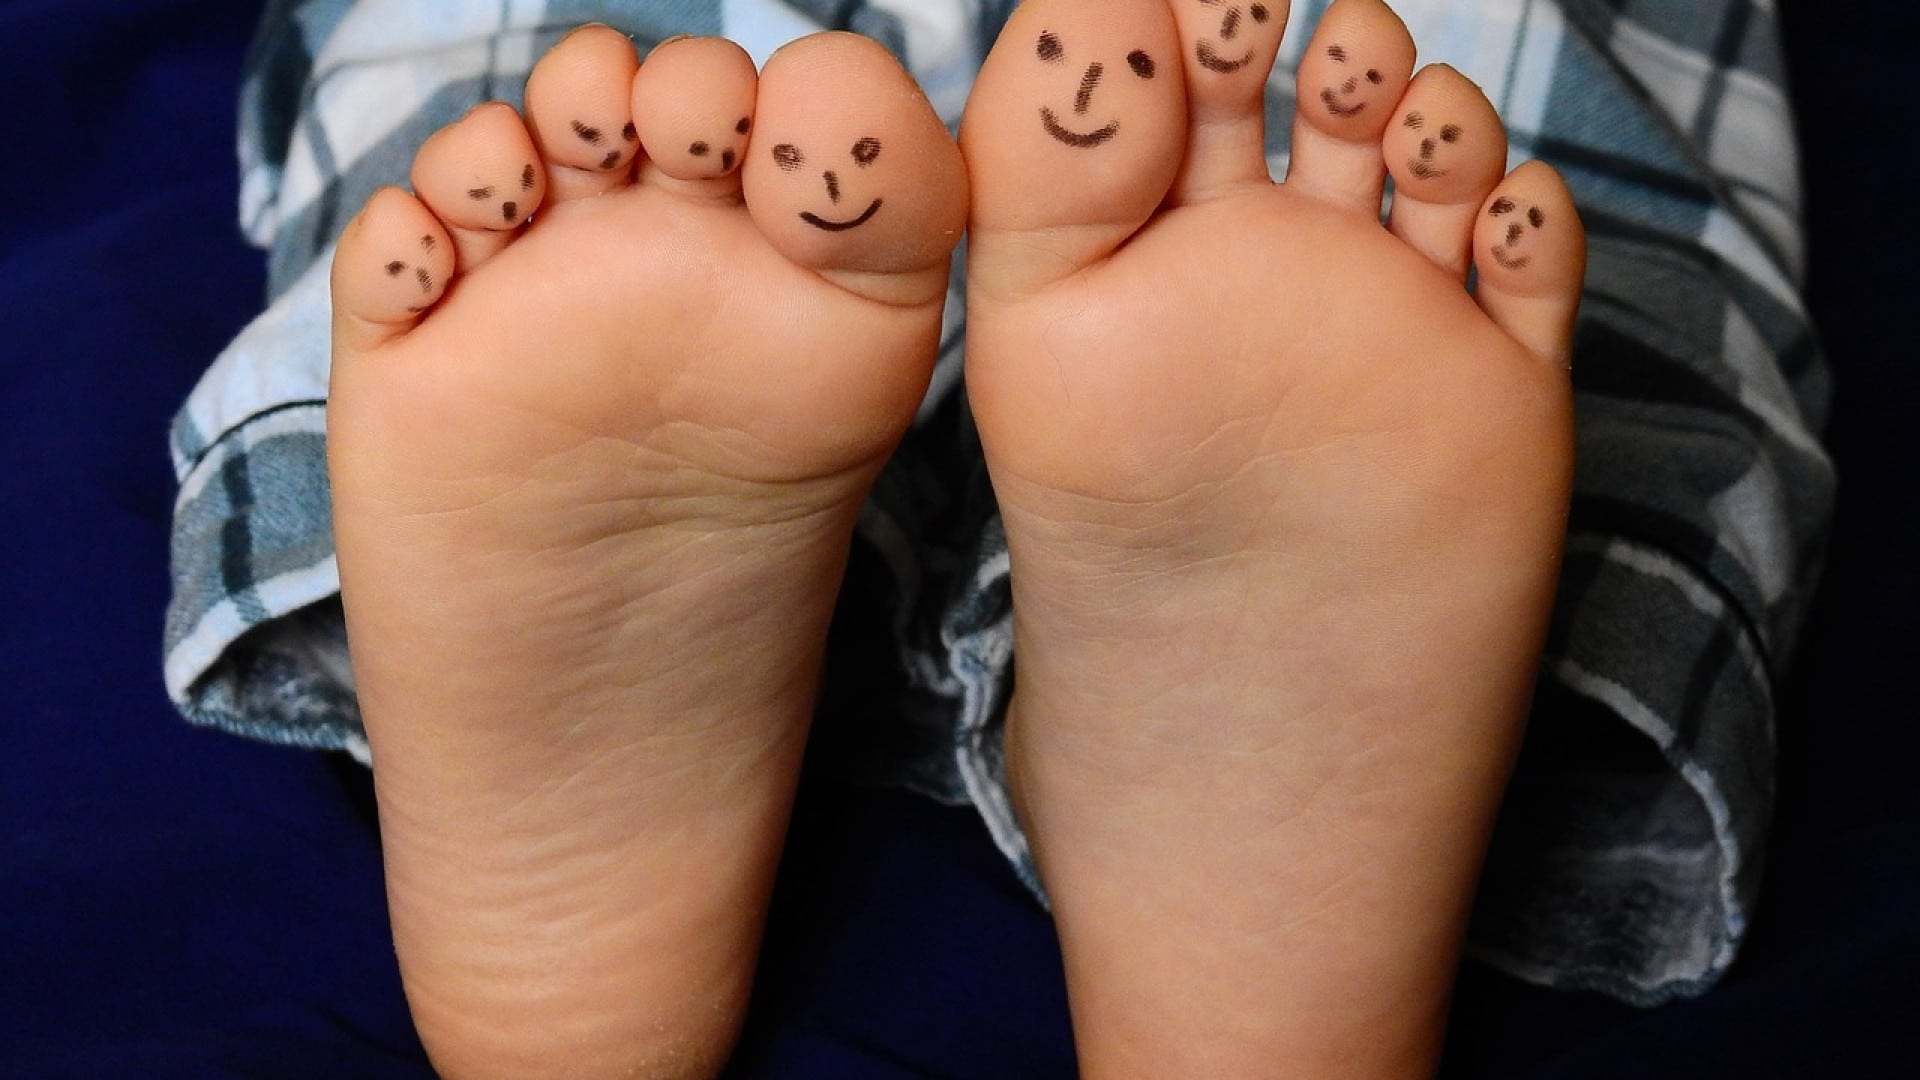 Les pieds nus d'une personne avec des visages souriants dessinés sur les orteils, présentant des astuces créatives.